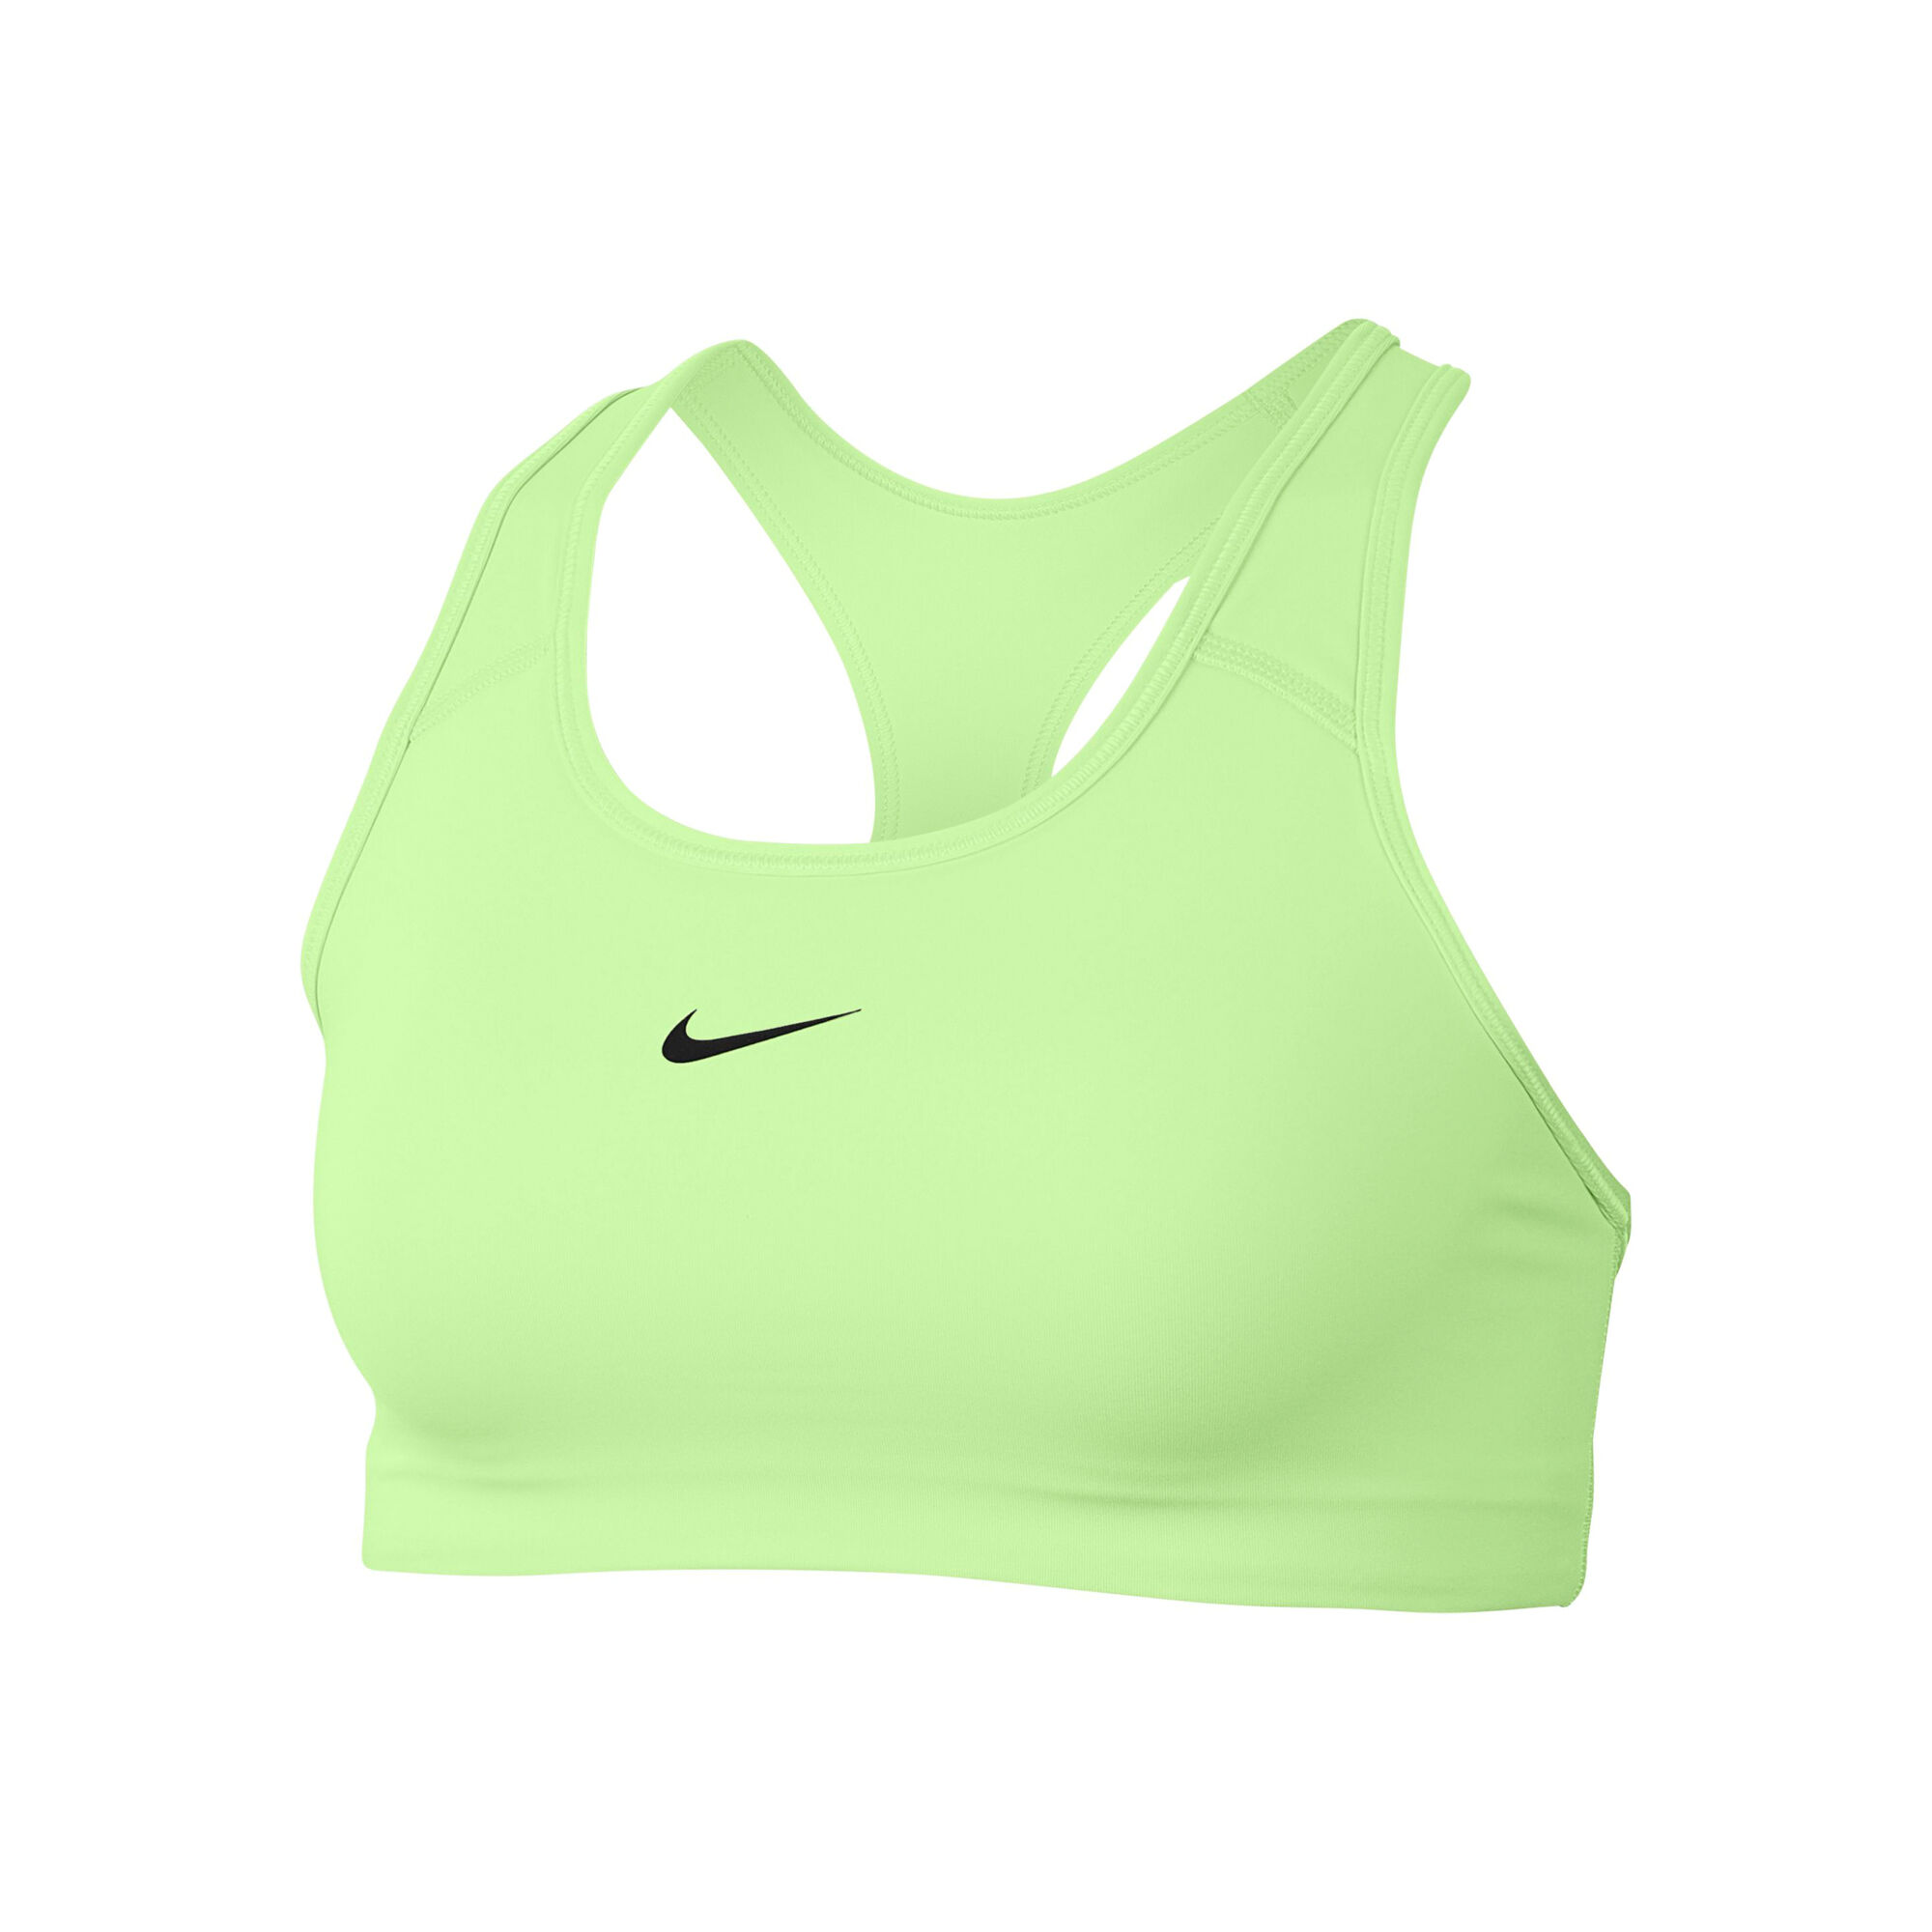 Lime green dri fit Nike sports bra - Depop